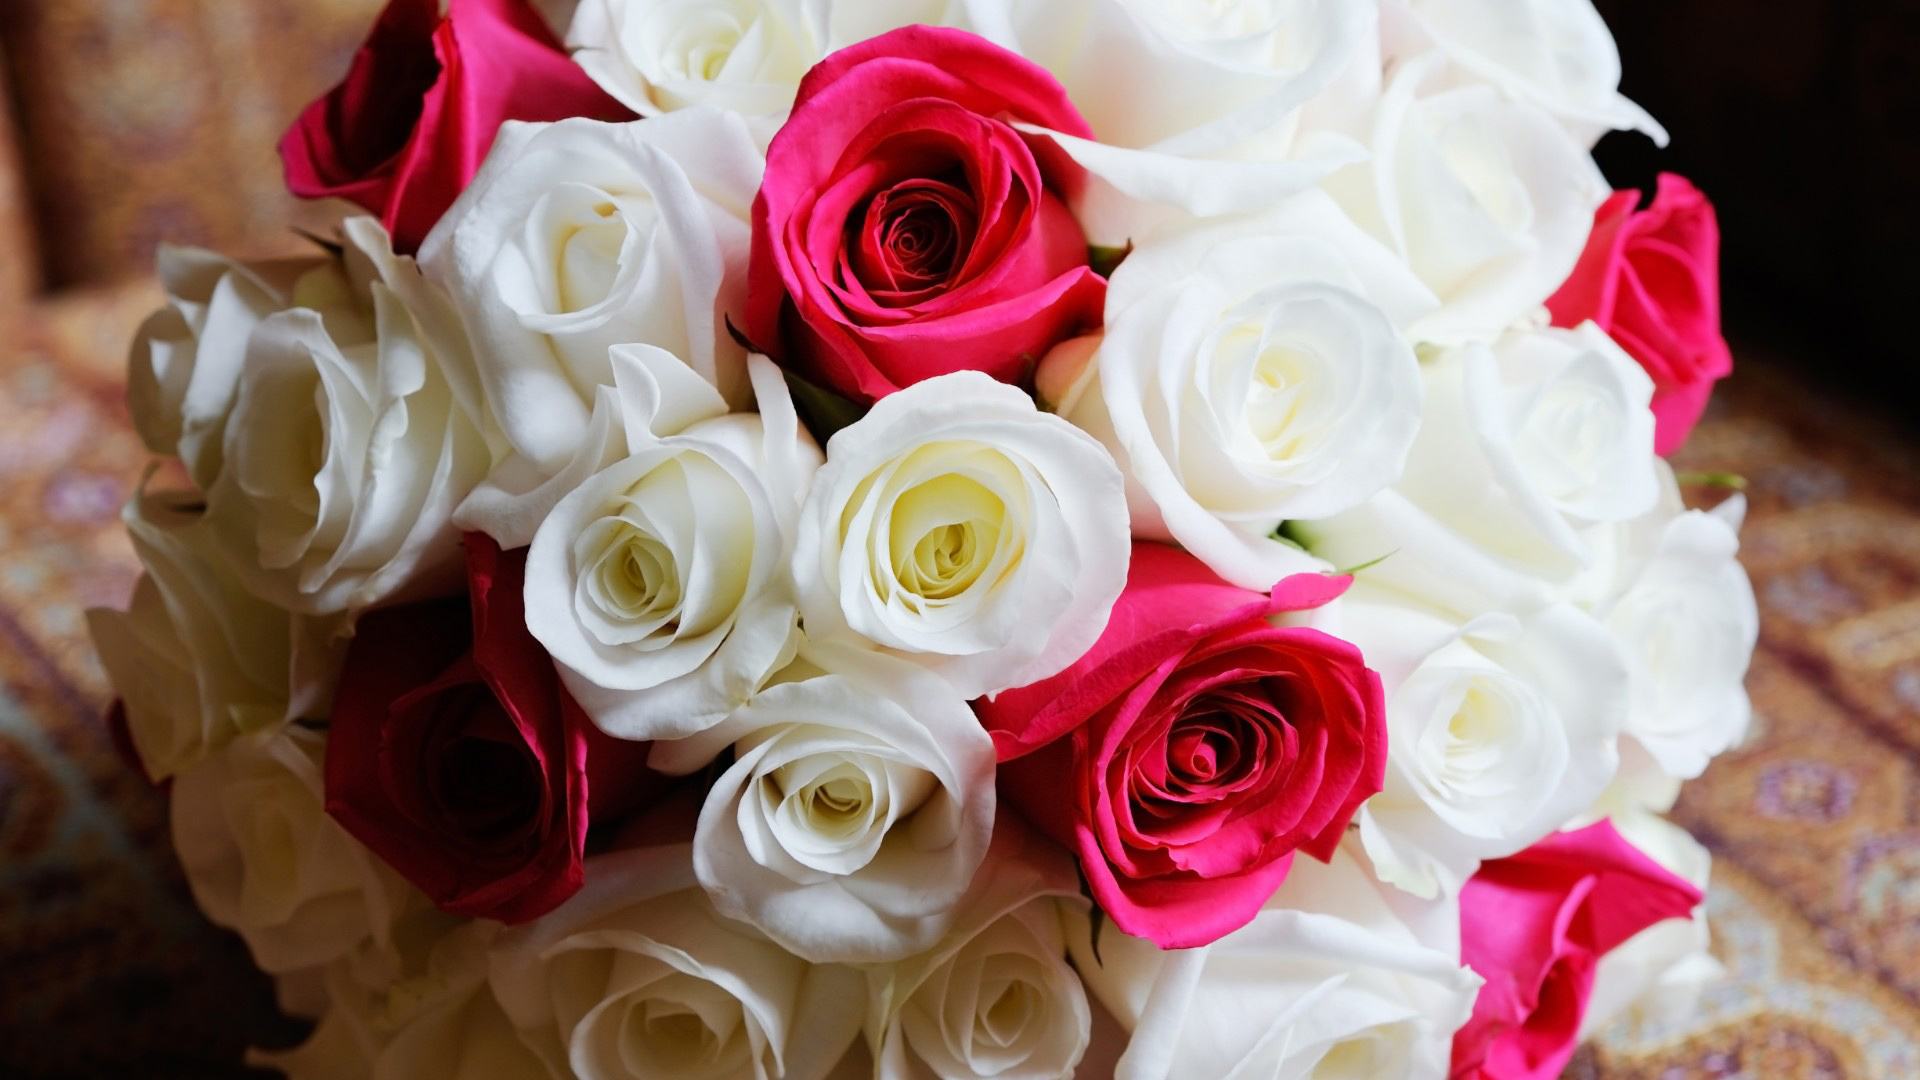 玫瑰花的图片唯美   大朵玫瑰精致清晰图片(5)